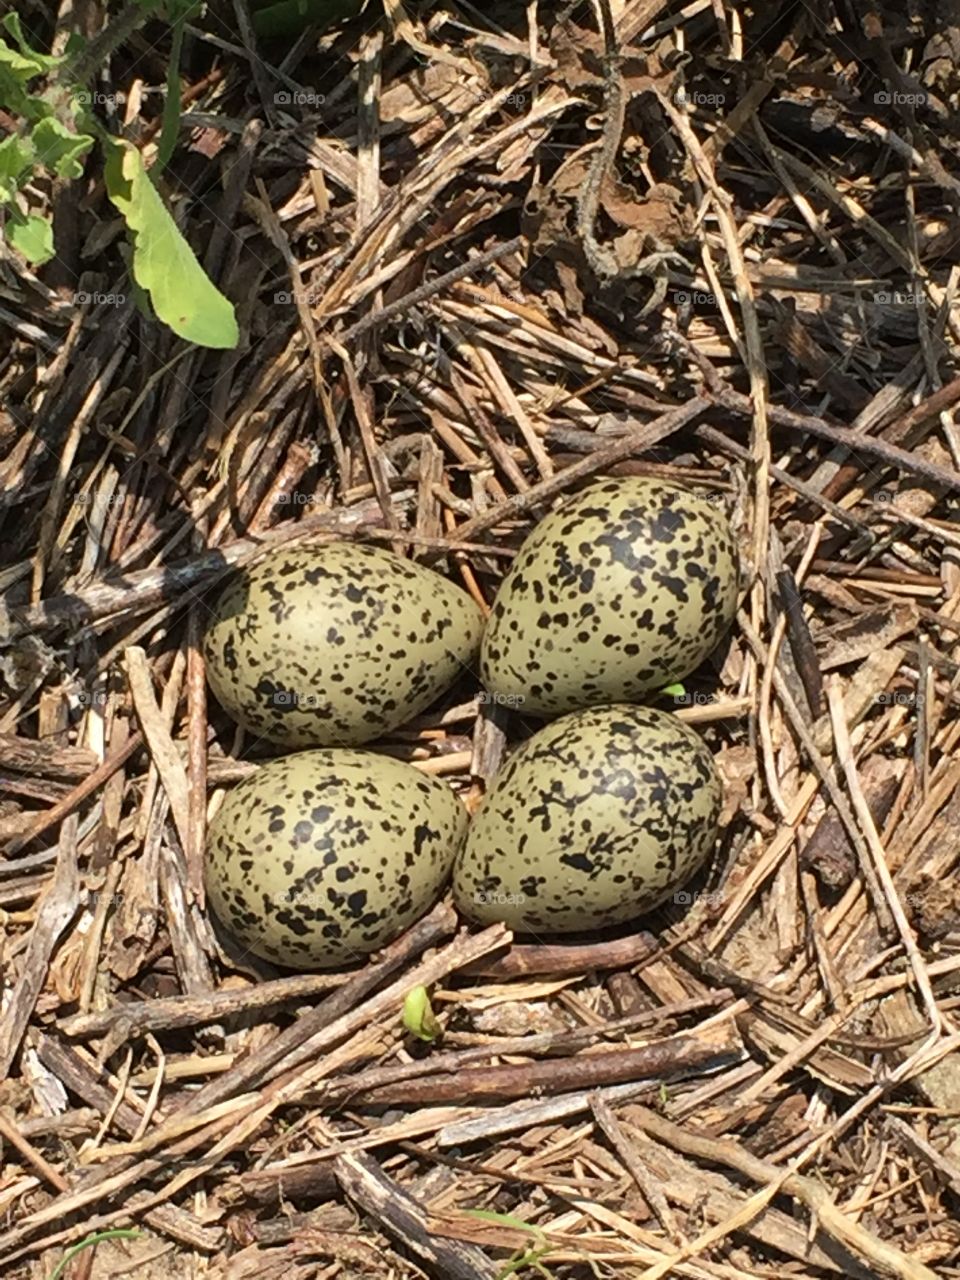 Black necked stilt nest with eggs